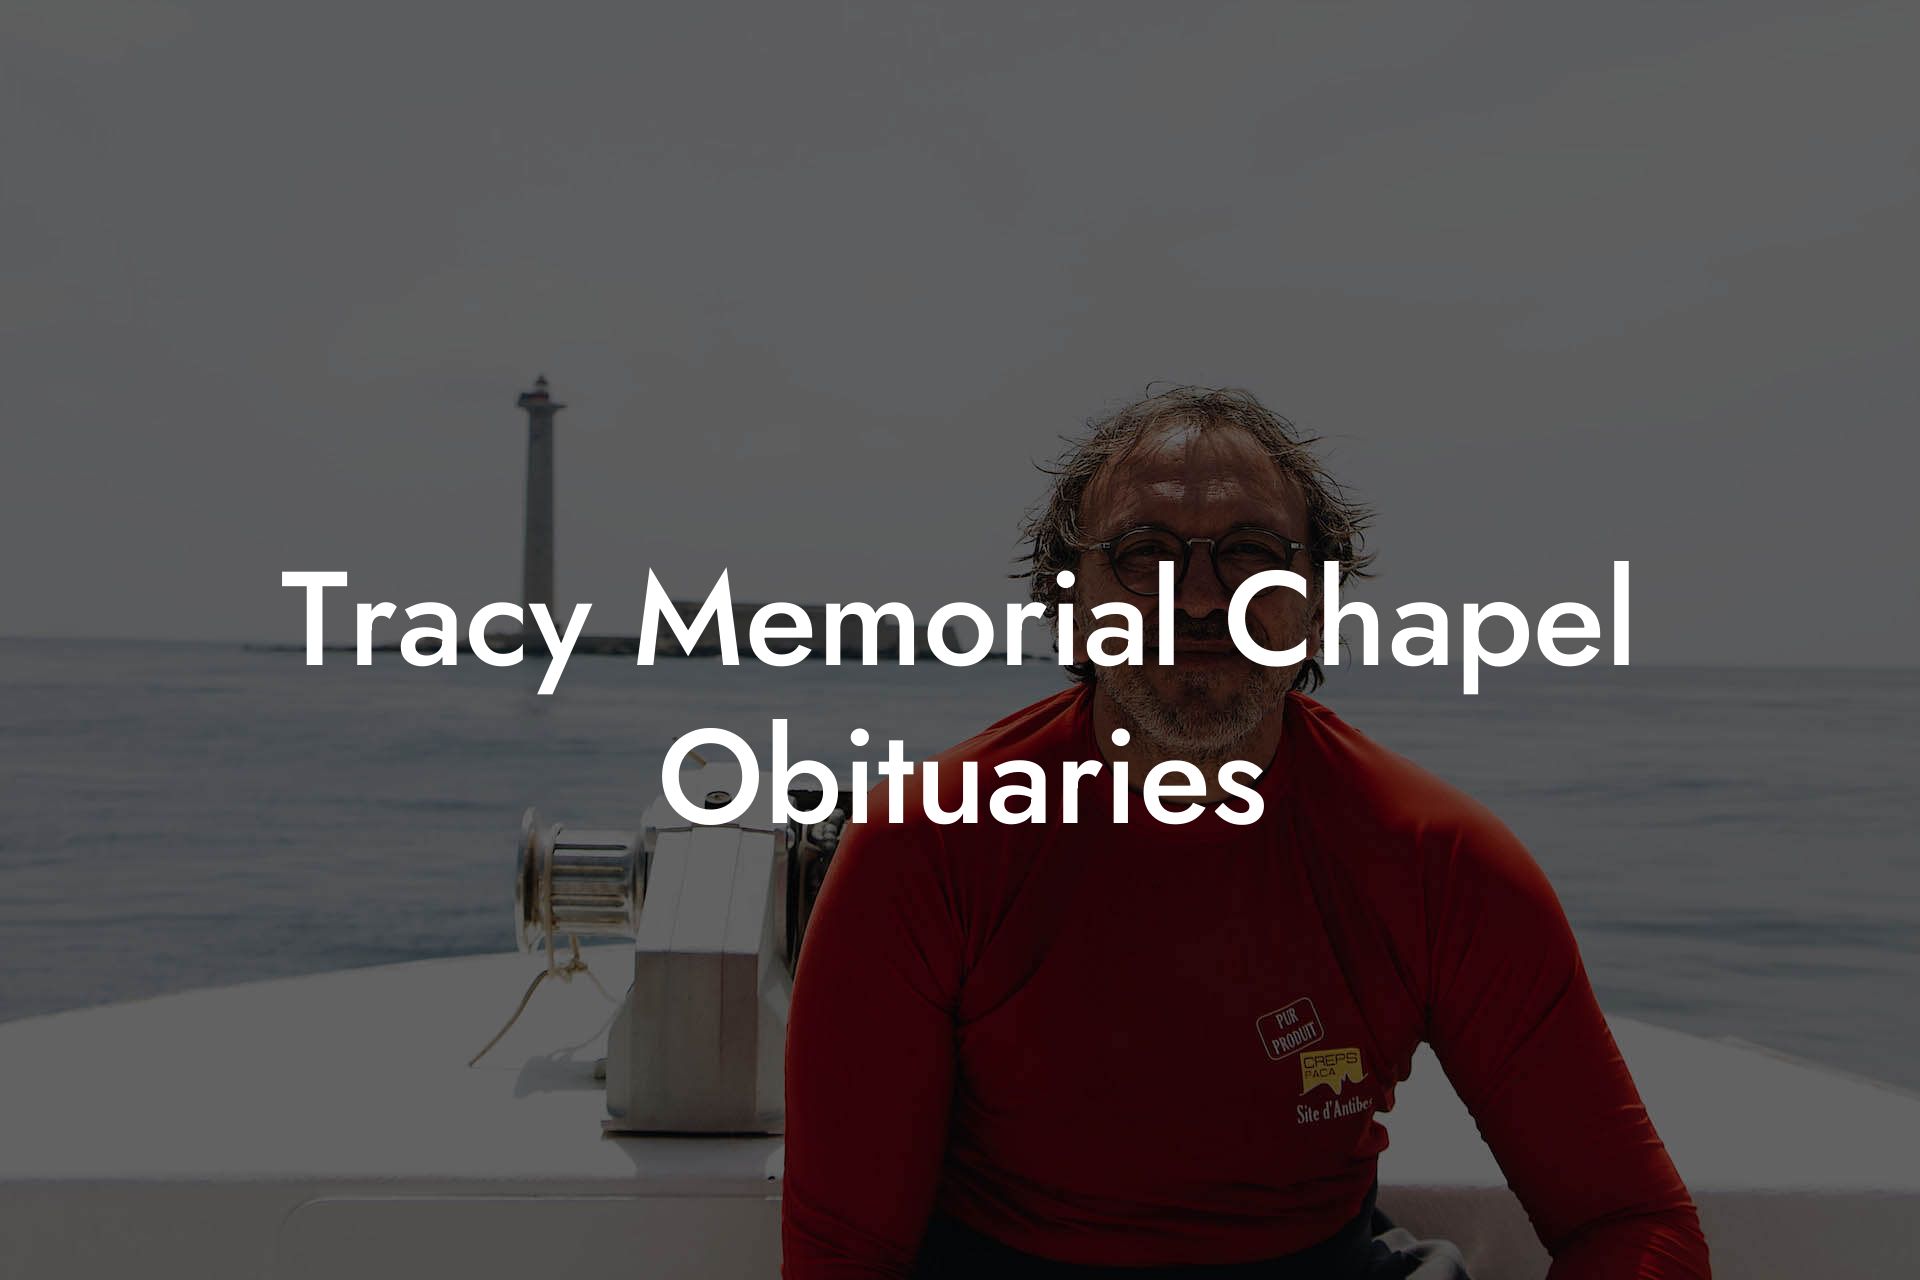 Tracy Memorial Chapel Obituaries